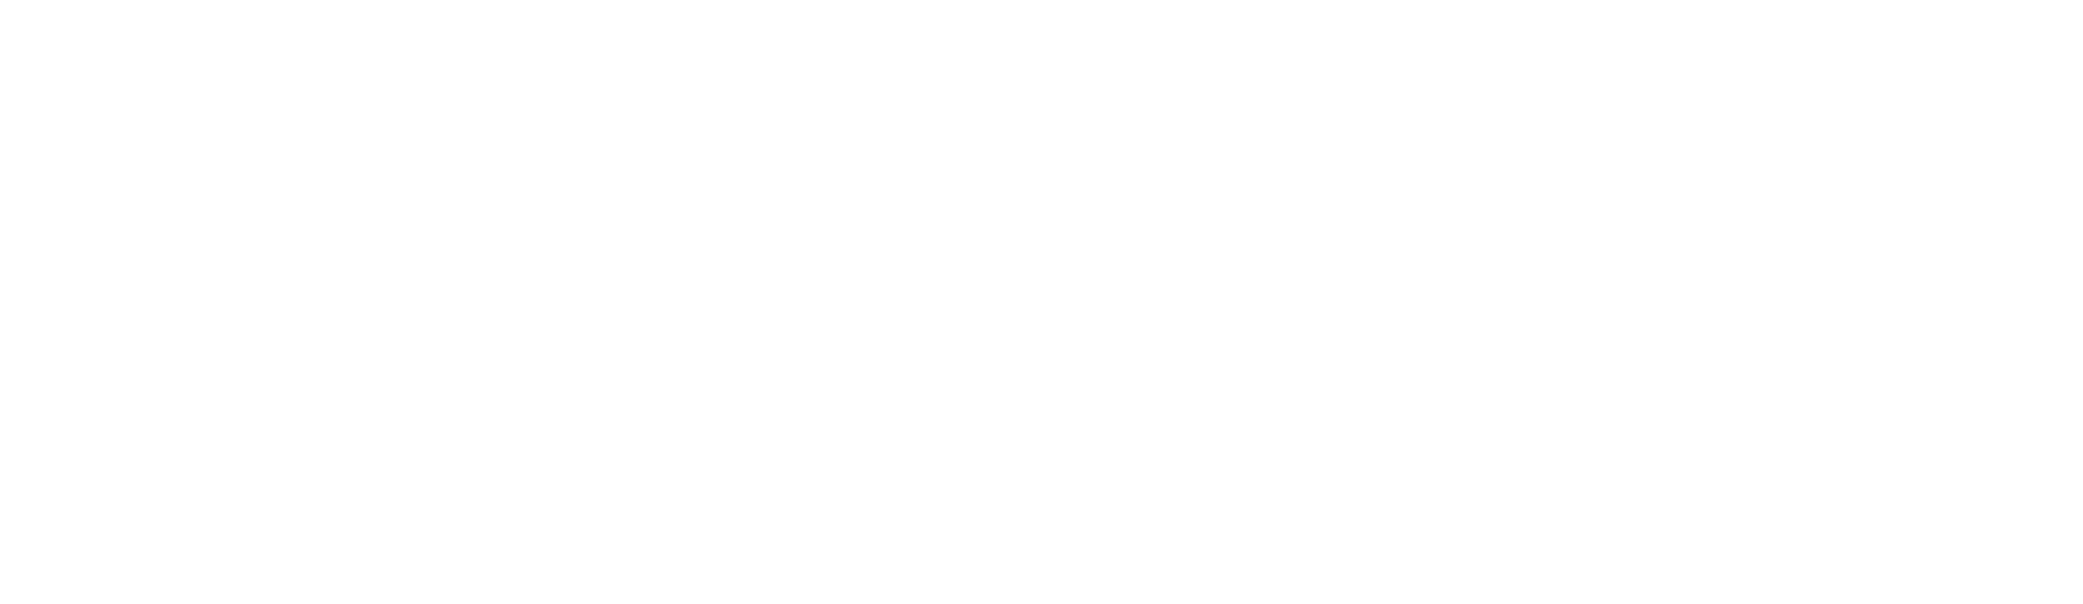 smallaxe logo